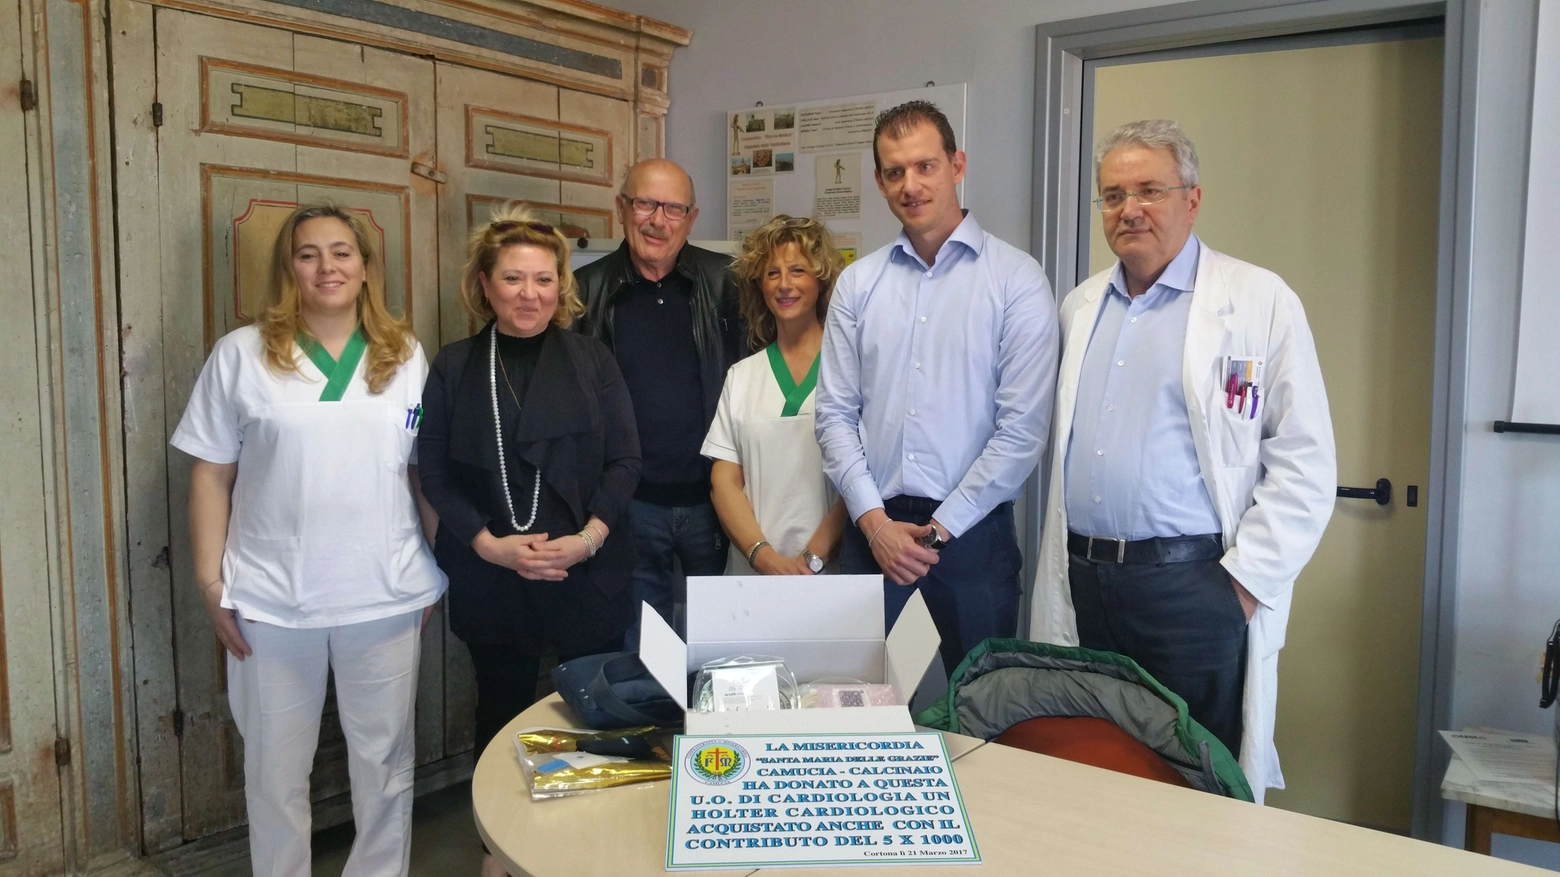 Consegna ufficiale del nuovo hoter all'ospedale Santa Margherita di Cortona